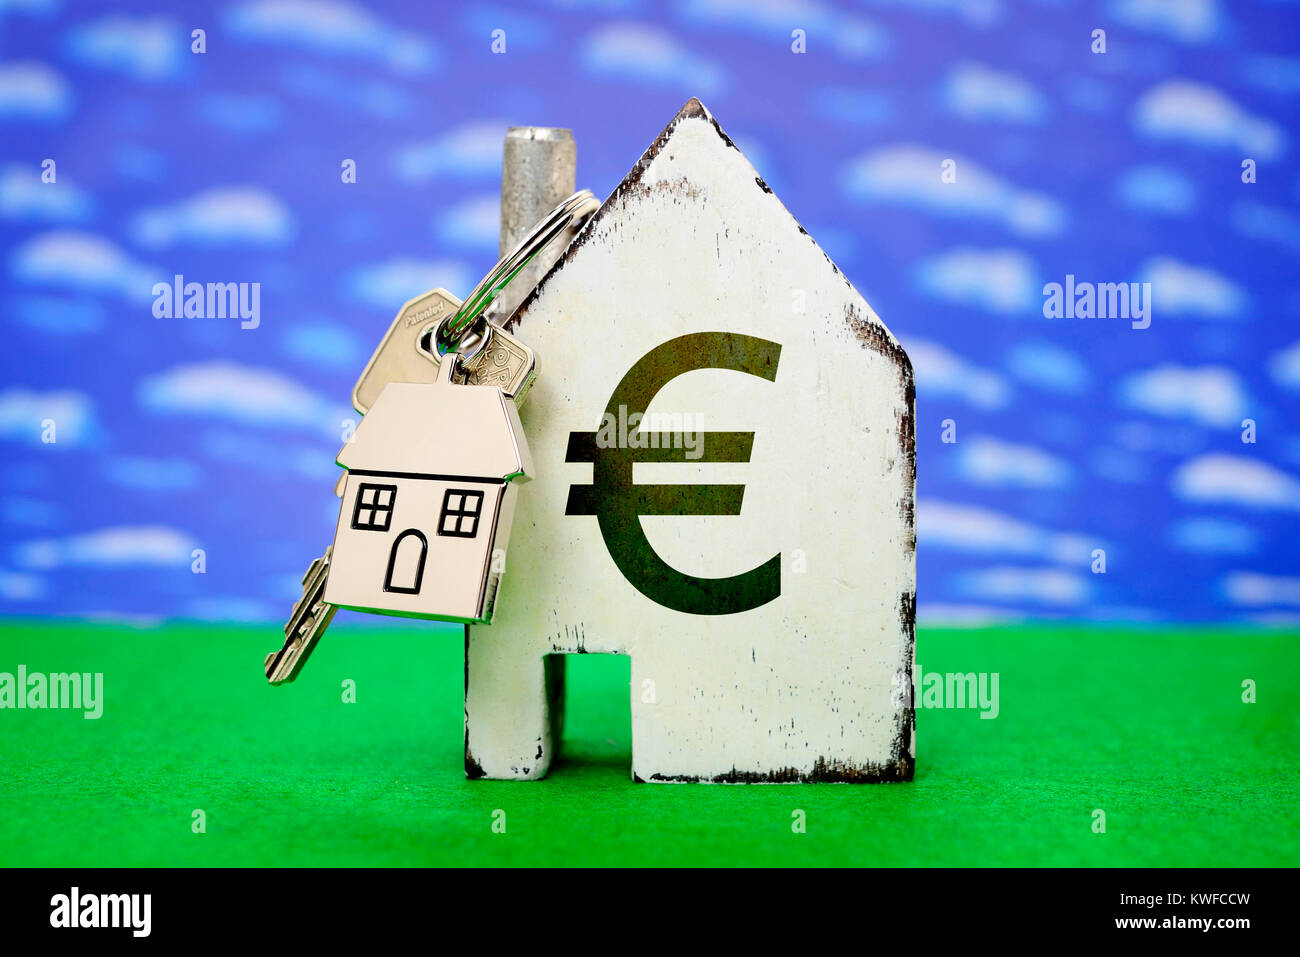 Casa con llave de la puerta delantera y eurosign, Haus mit Eurozeichen und Haustuerschluessel Foto de stock